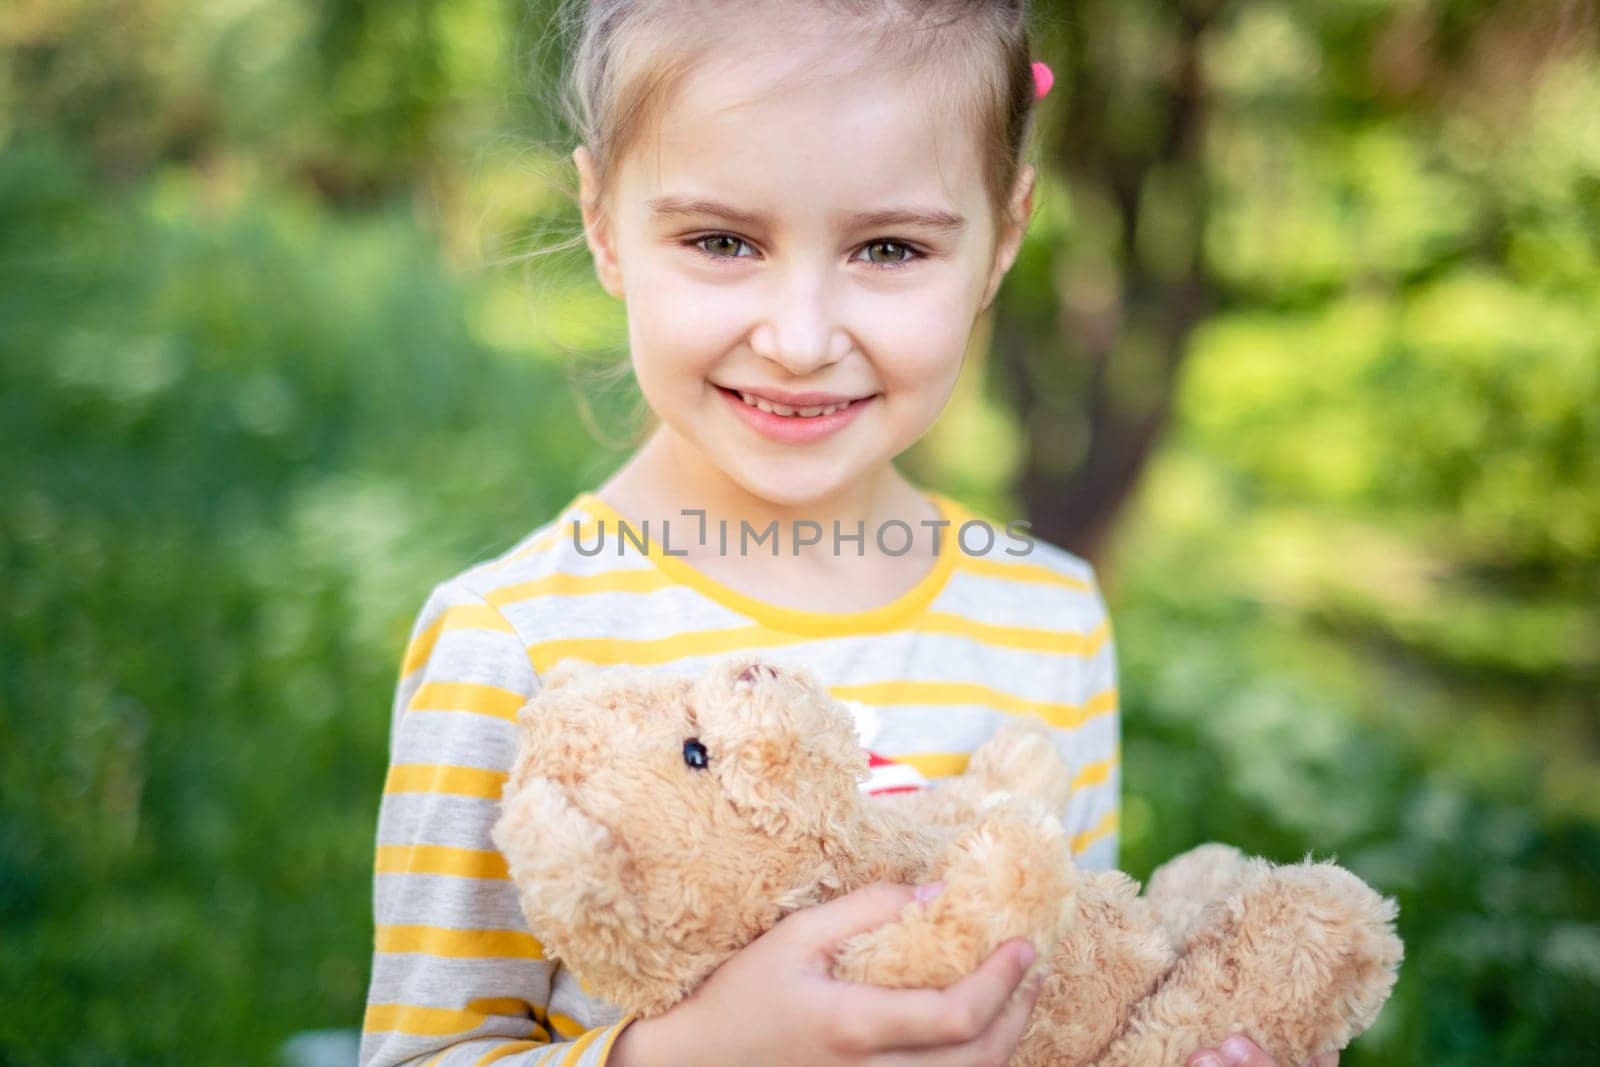 Little girl with teddy bear in park by GekaSkr